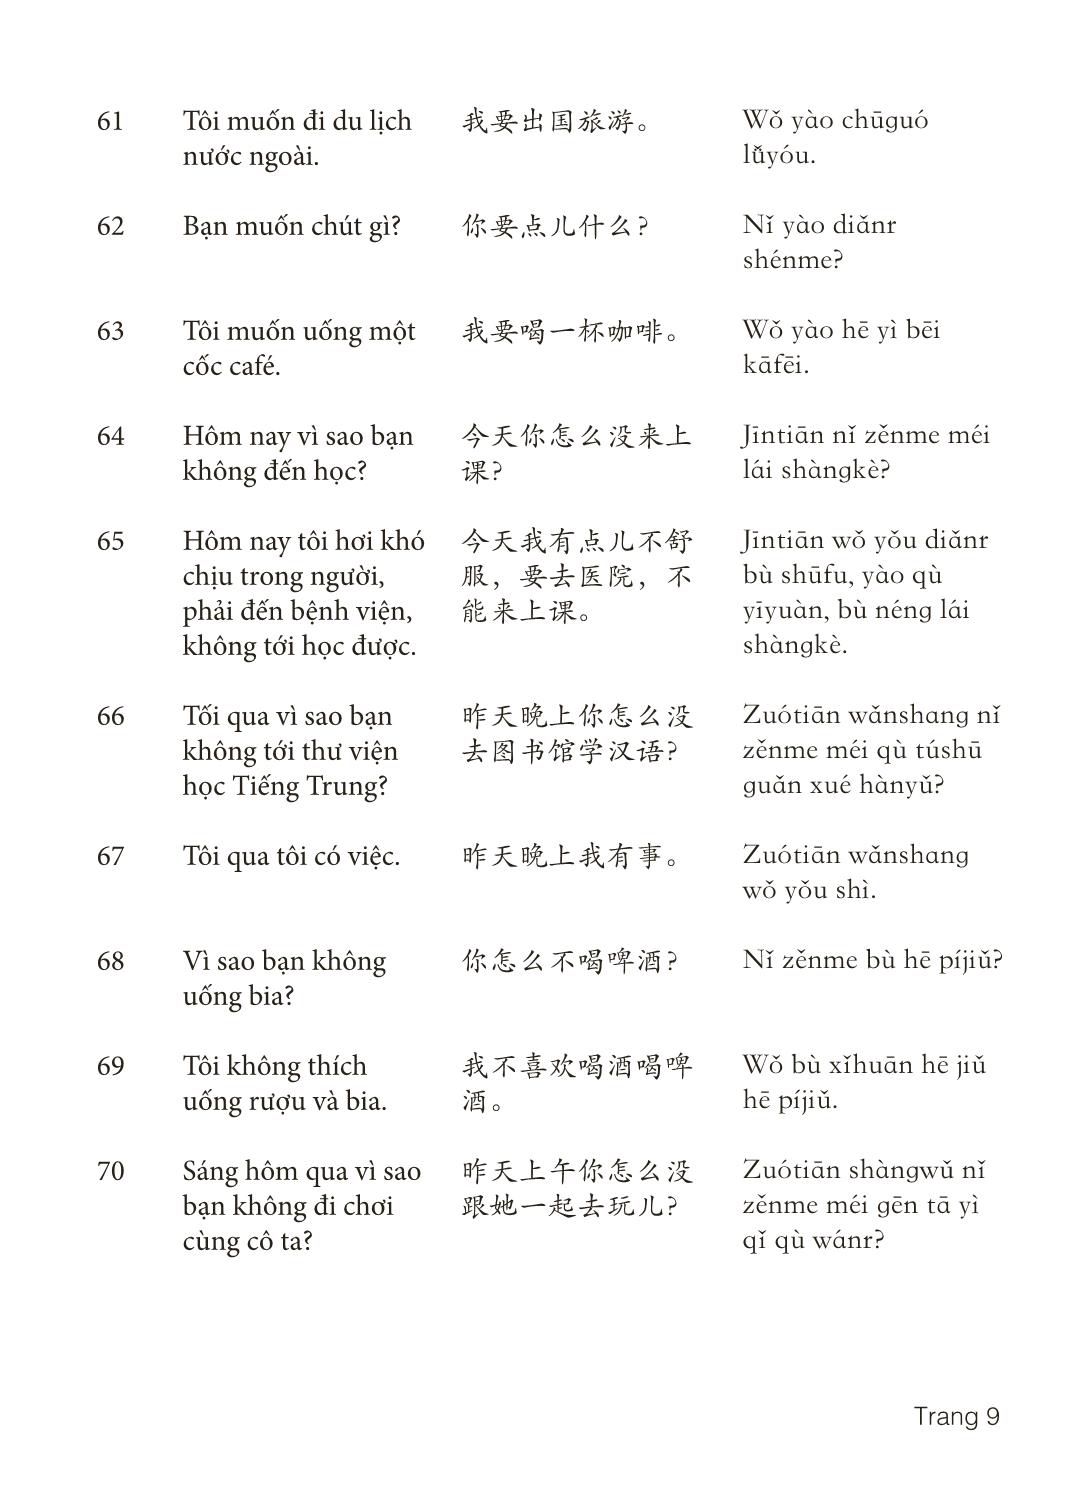 3000 Câu đàm thoại tiếng Hoa - Phần 7 trang 9